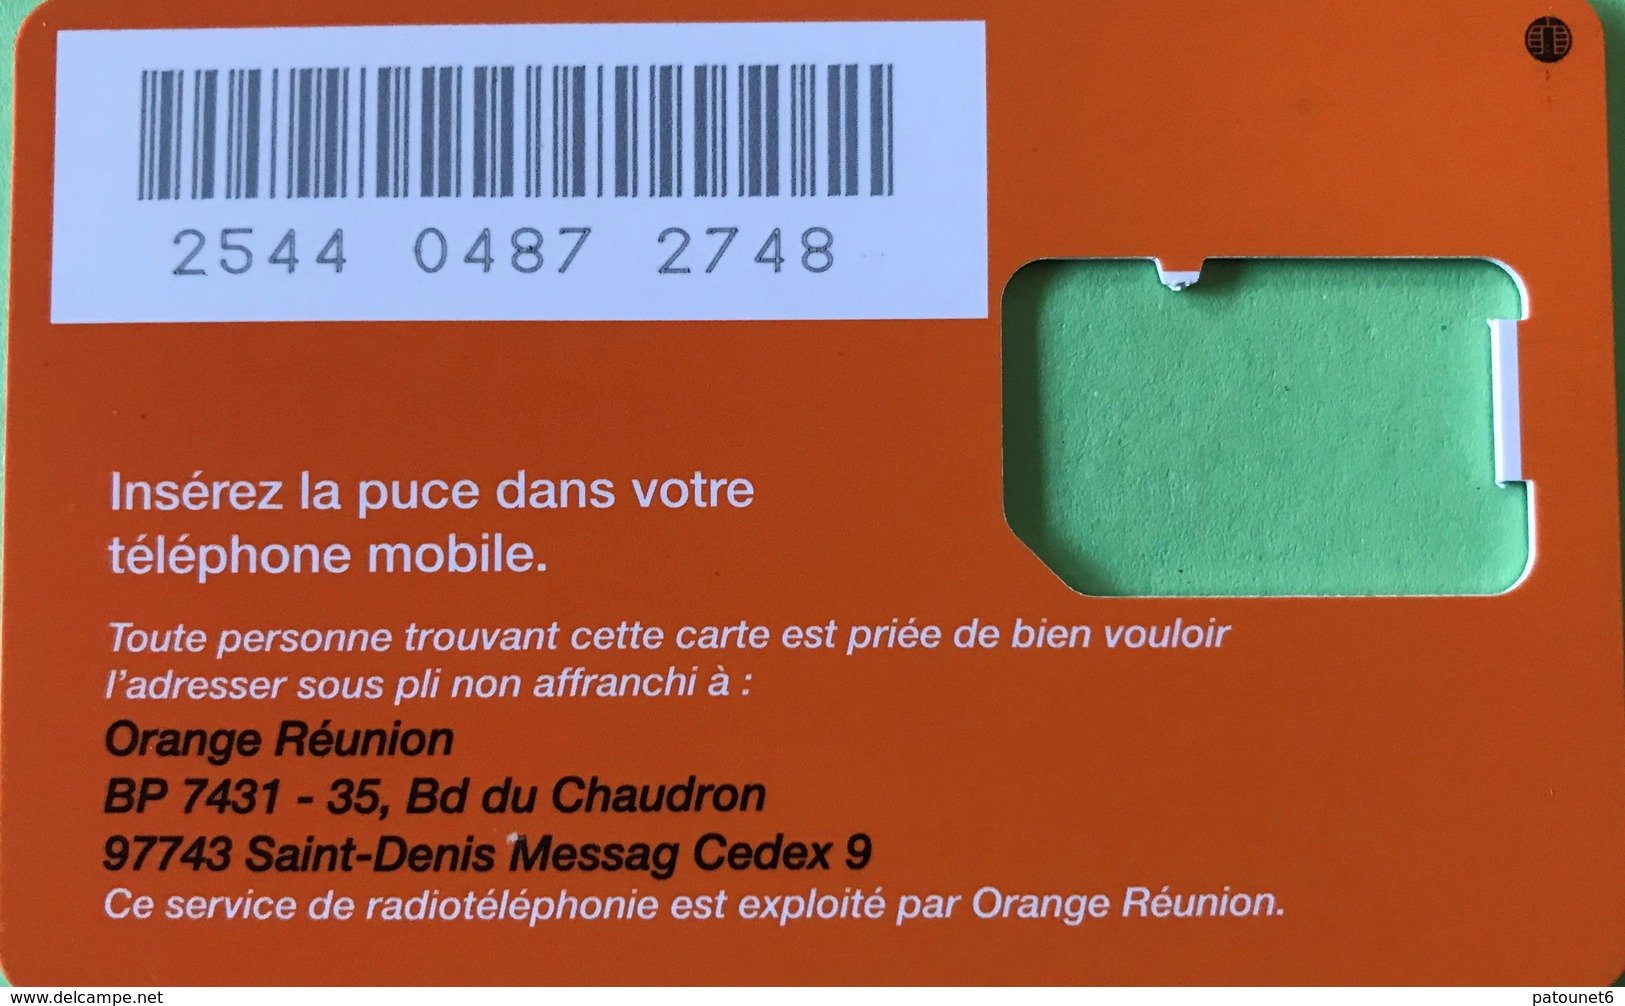 REUNION  -  Carte SIM Orange " Compte Mobile § La Mobicarte  -  Coque Sans Puce - Réunion